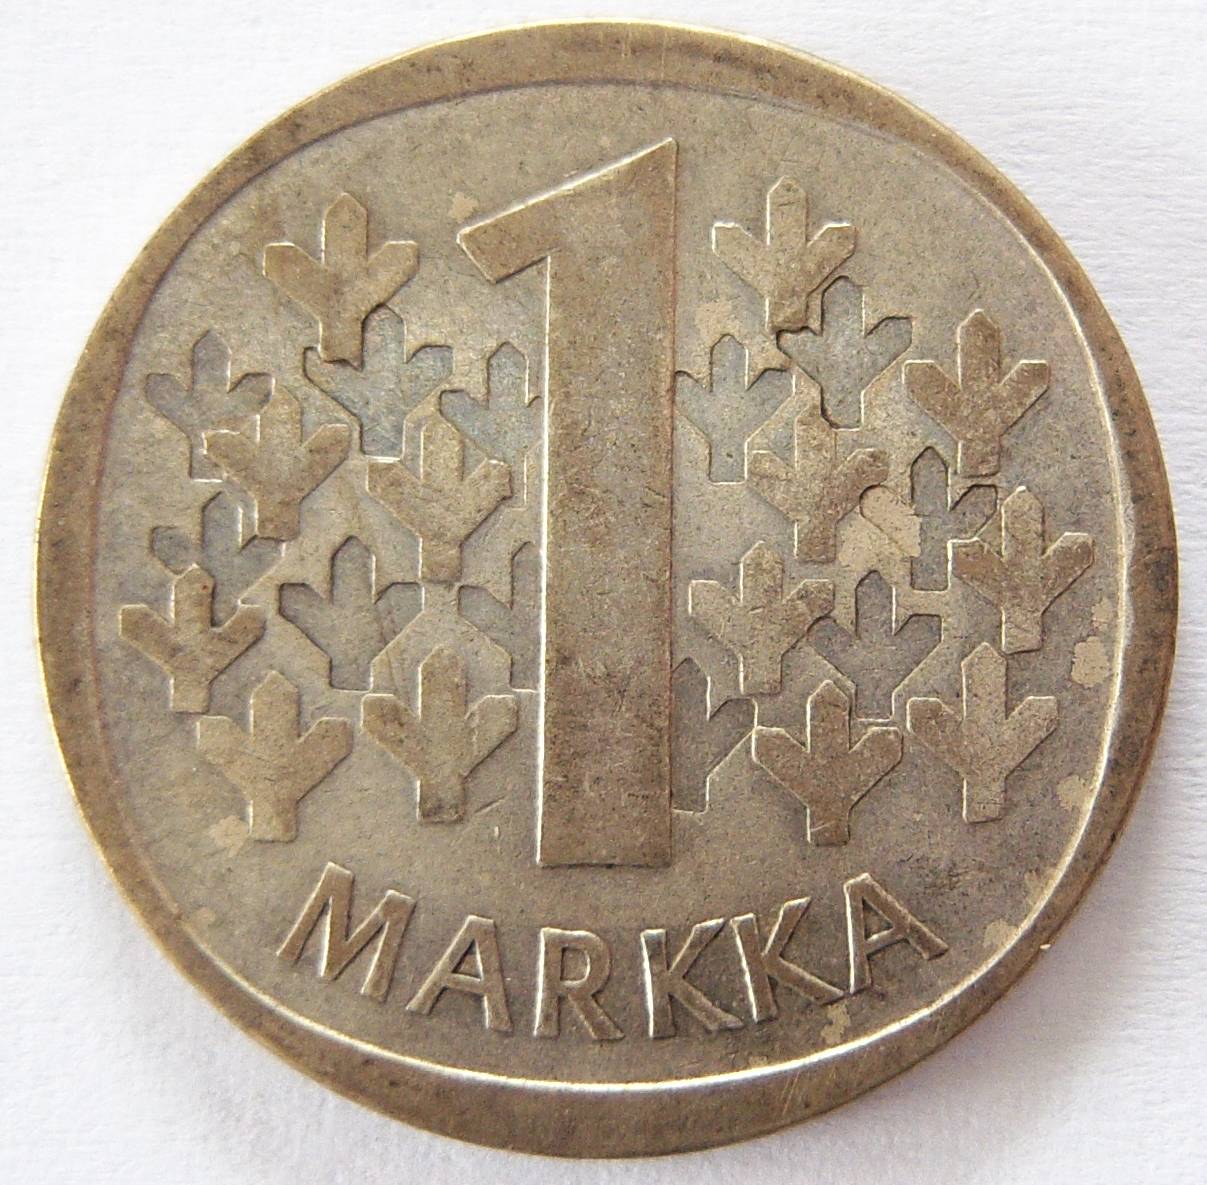  Finnland 1 Markka 1964   